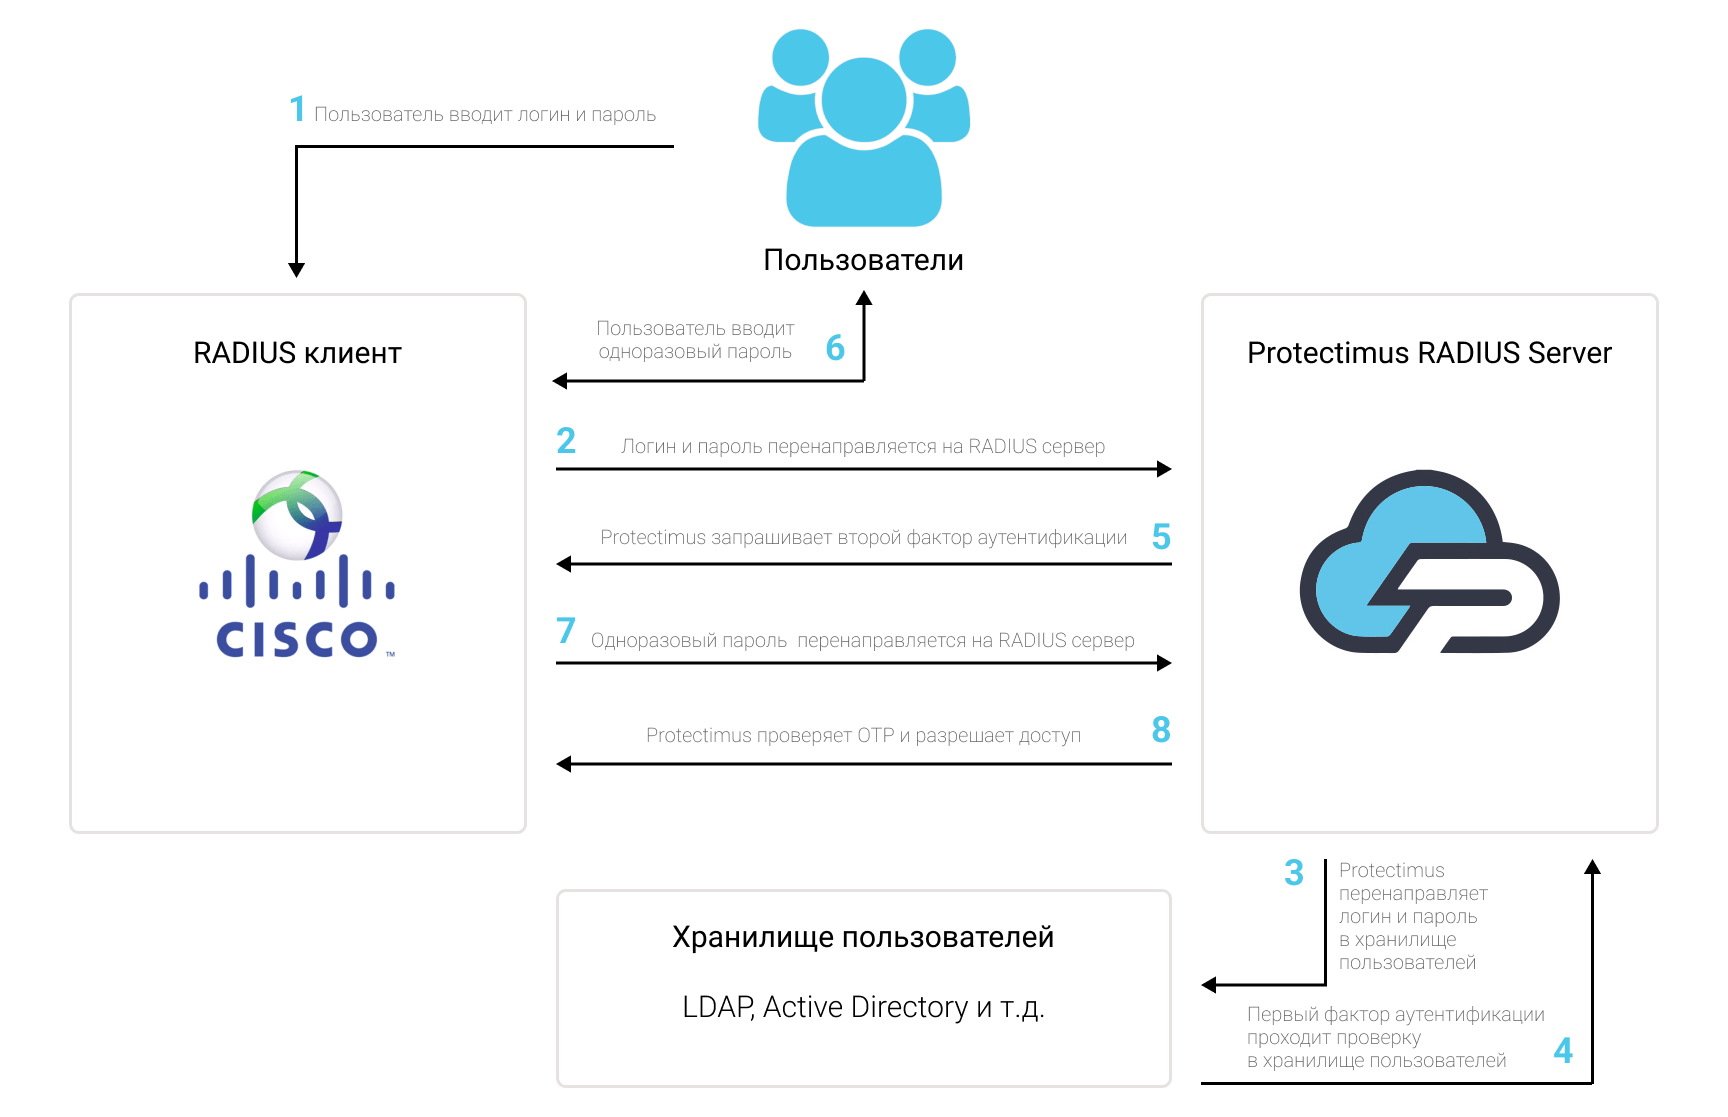 Схема работы решения вухфакторной аутентификации Protectimus для сетевой техники Cisco